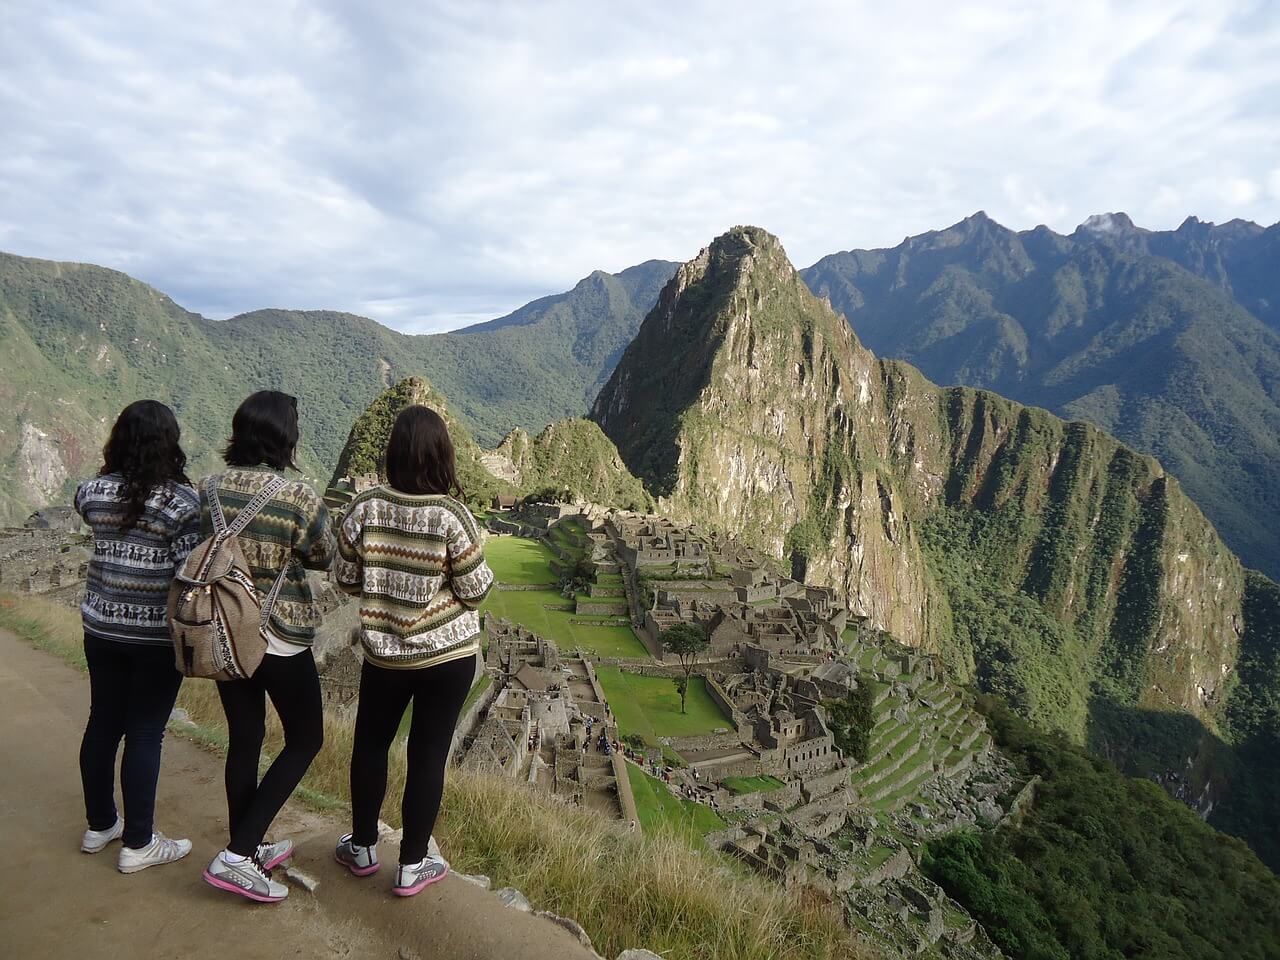 Amigas de turismo en Machu Picchu